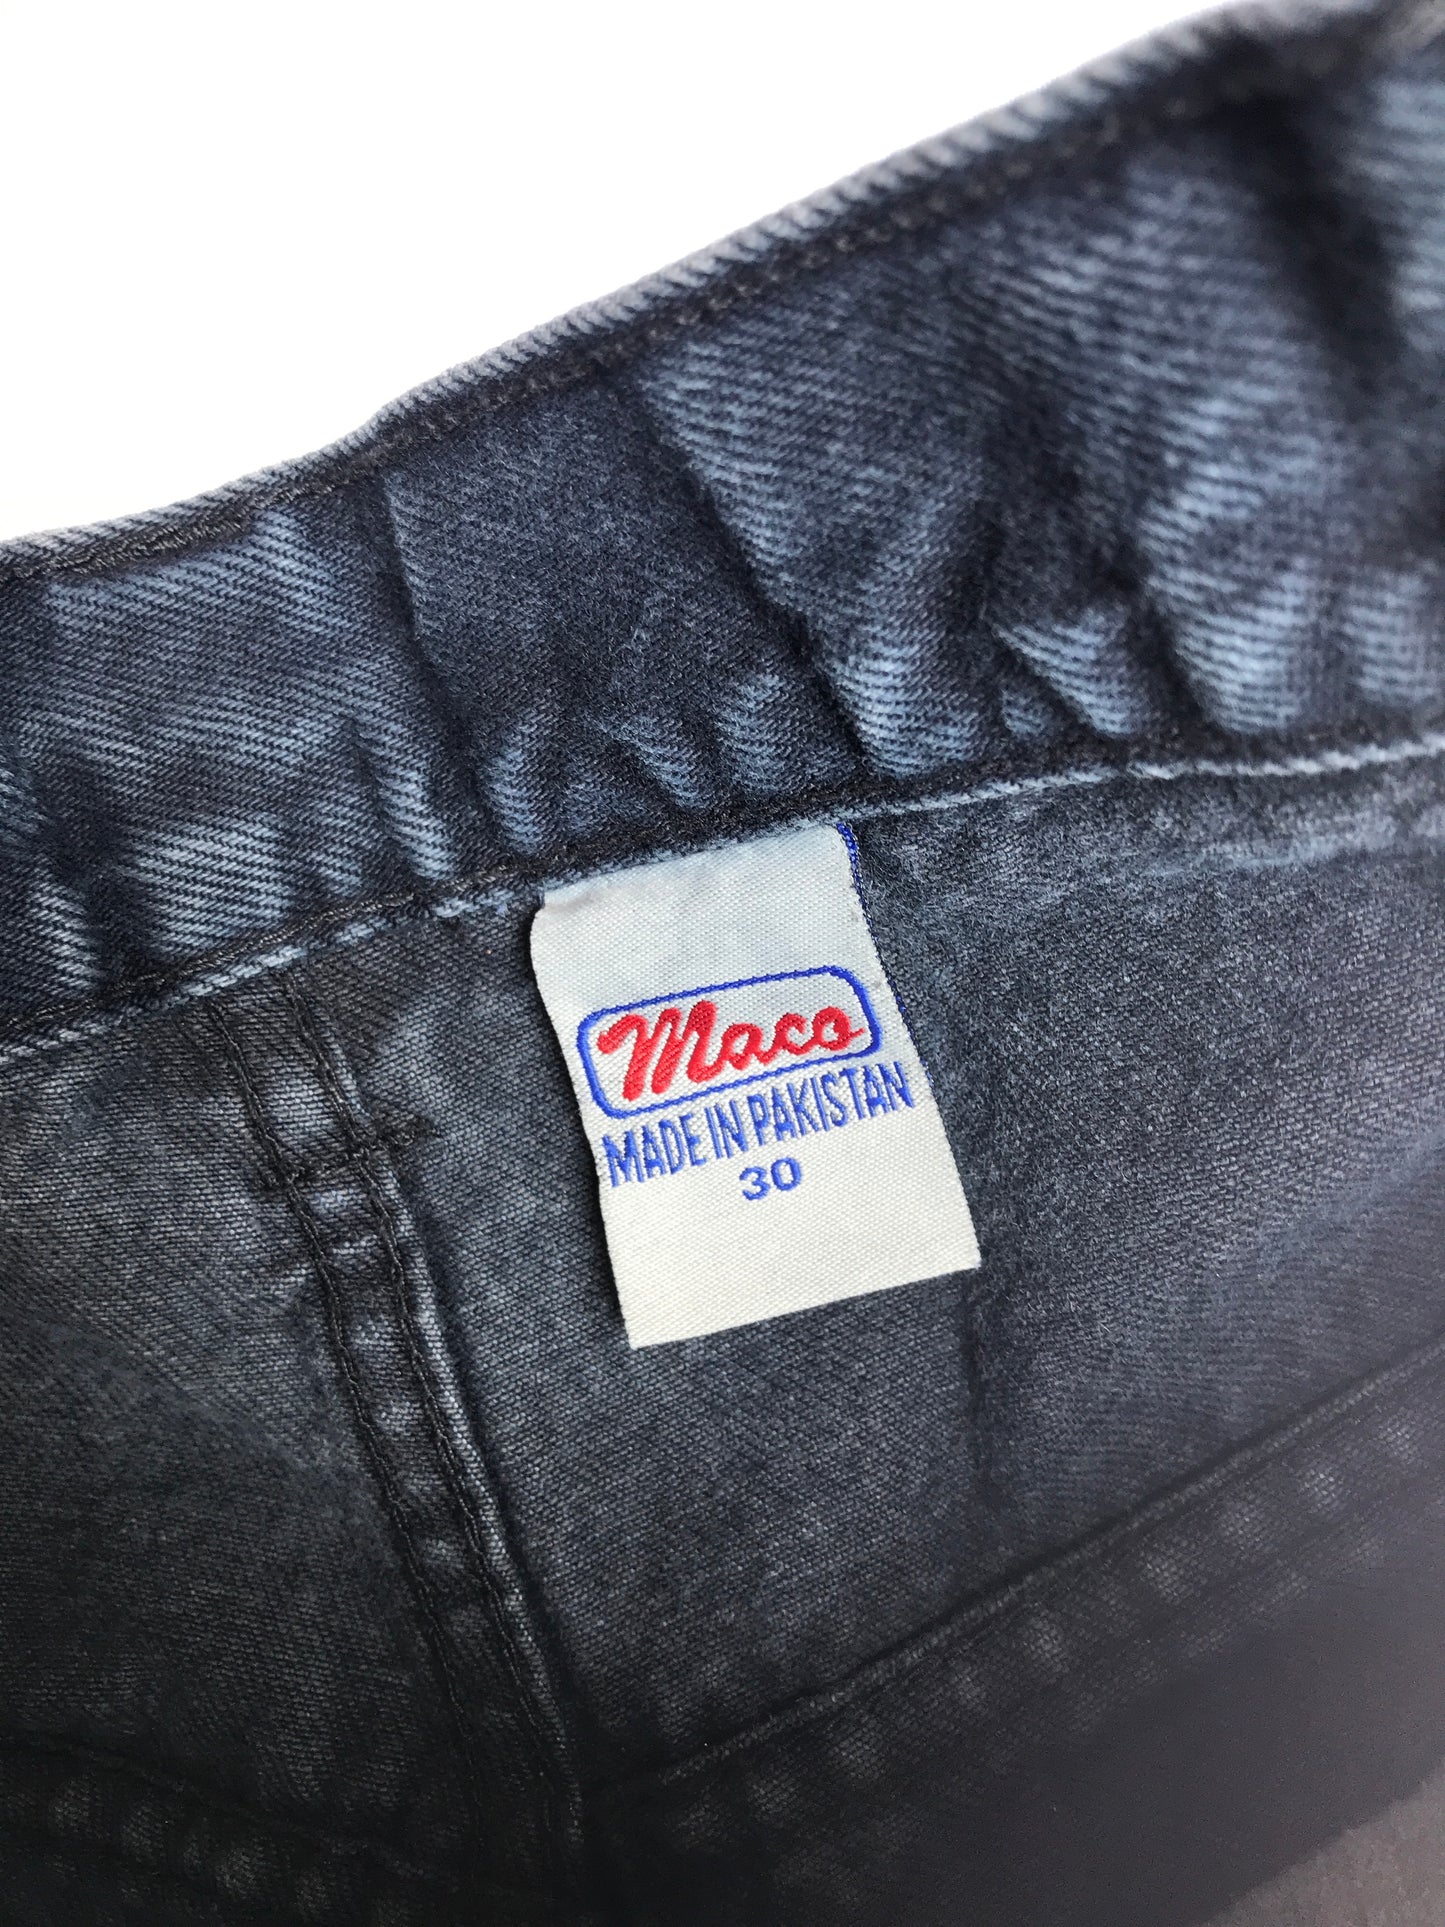 Vintage Maco Jeans